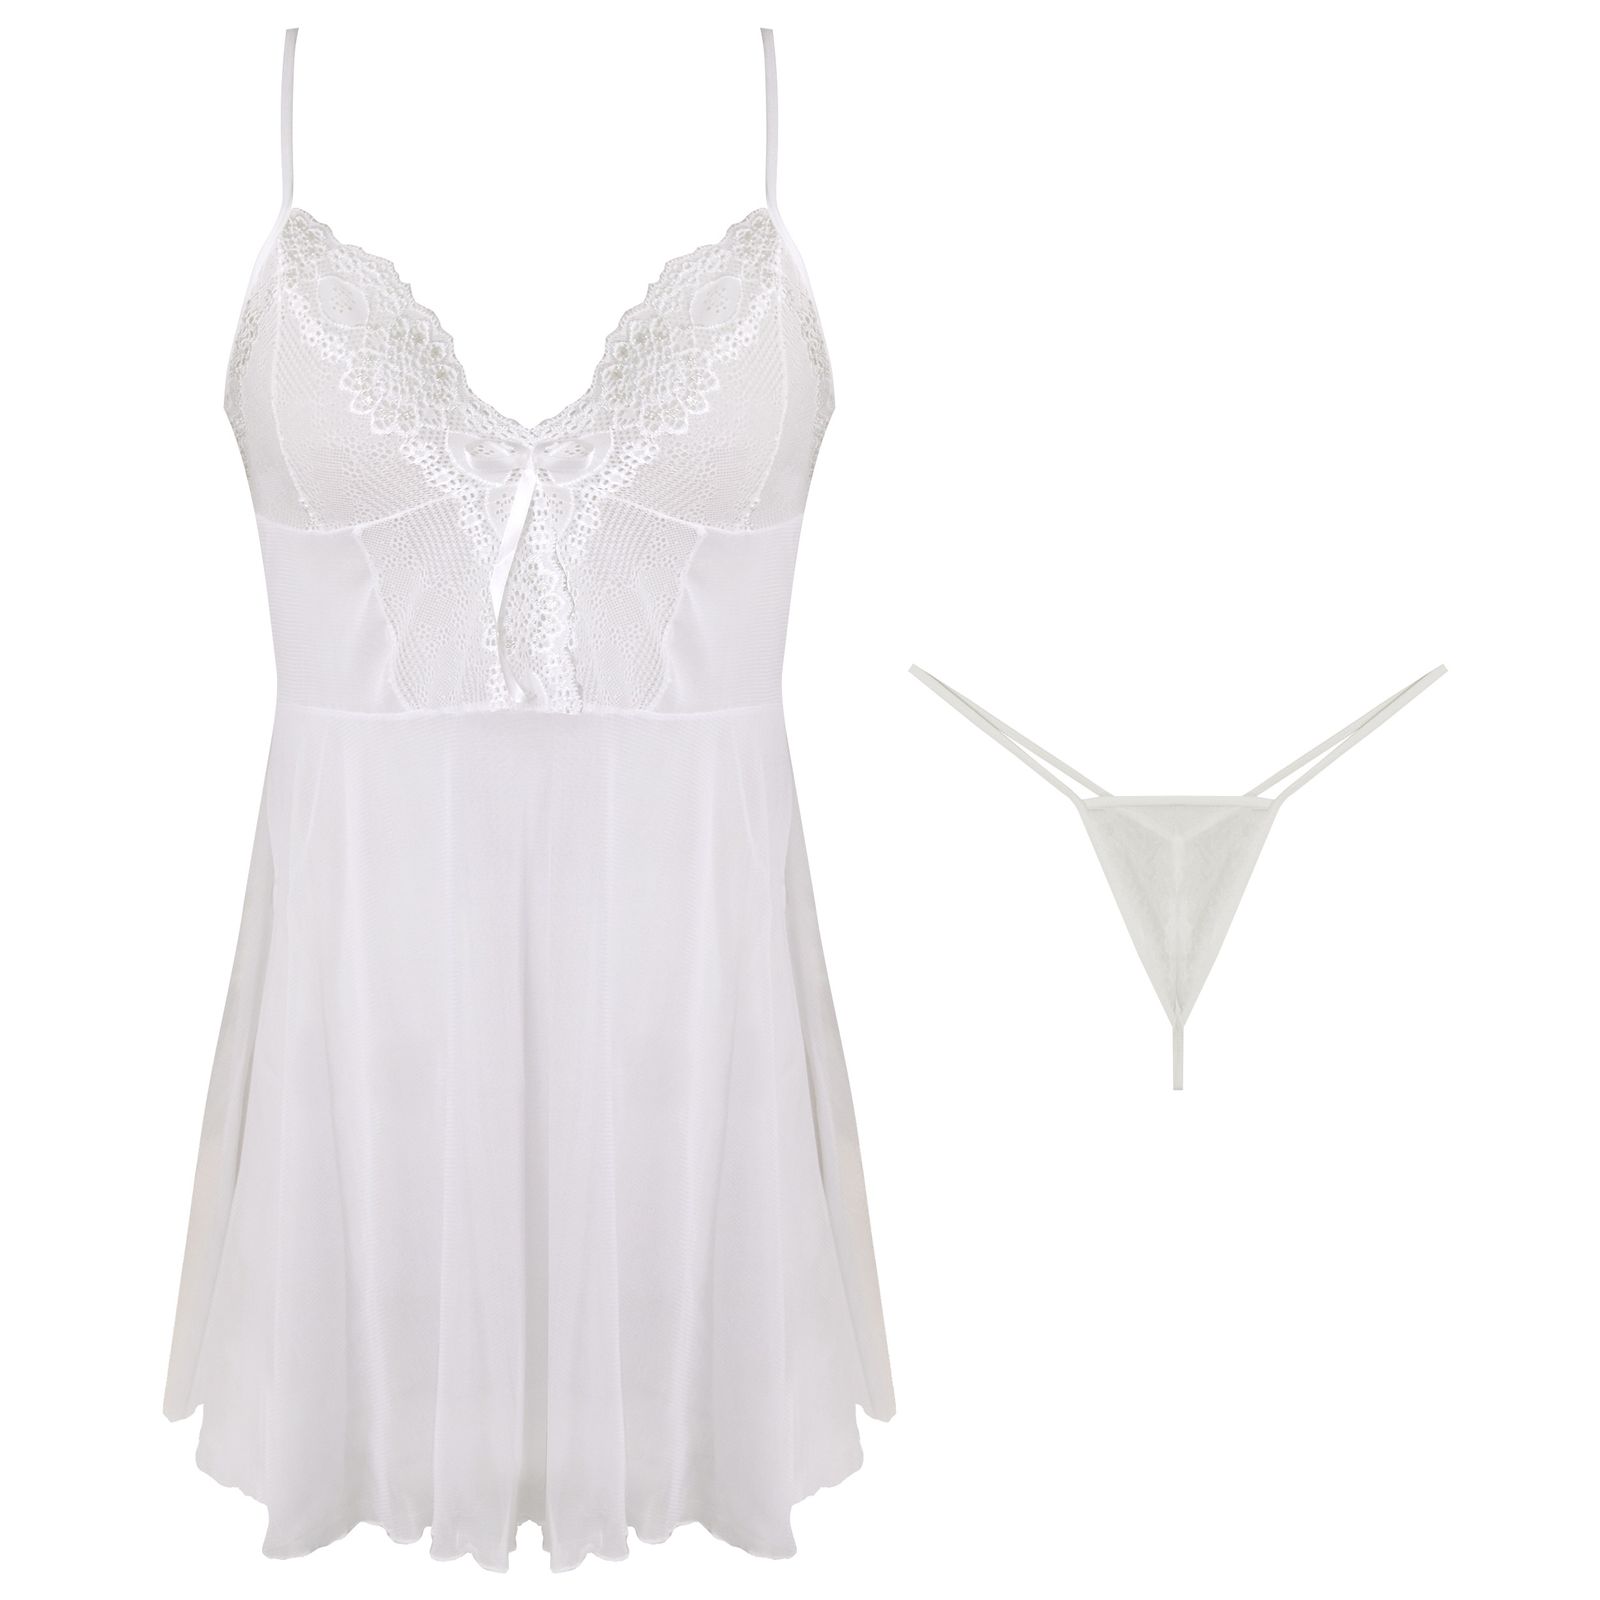 لباس خواب زنانه ماییلدا مدل 3751-508 رنگ سفید -  - 1